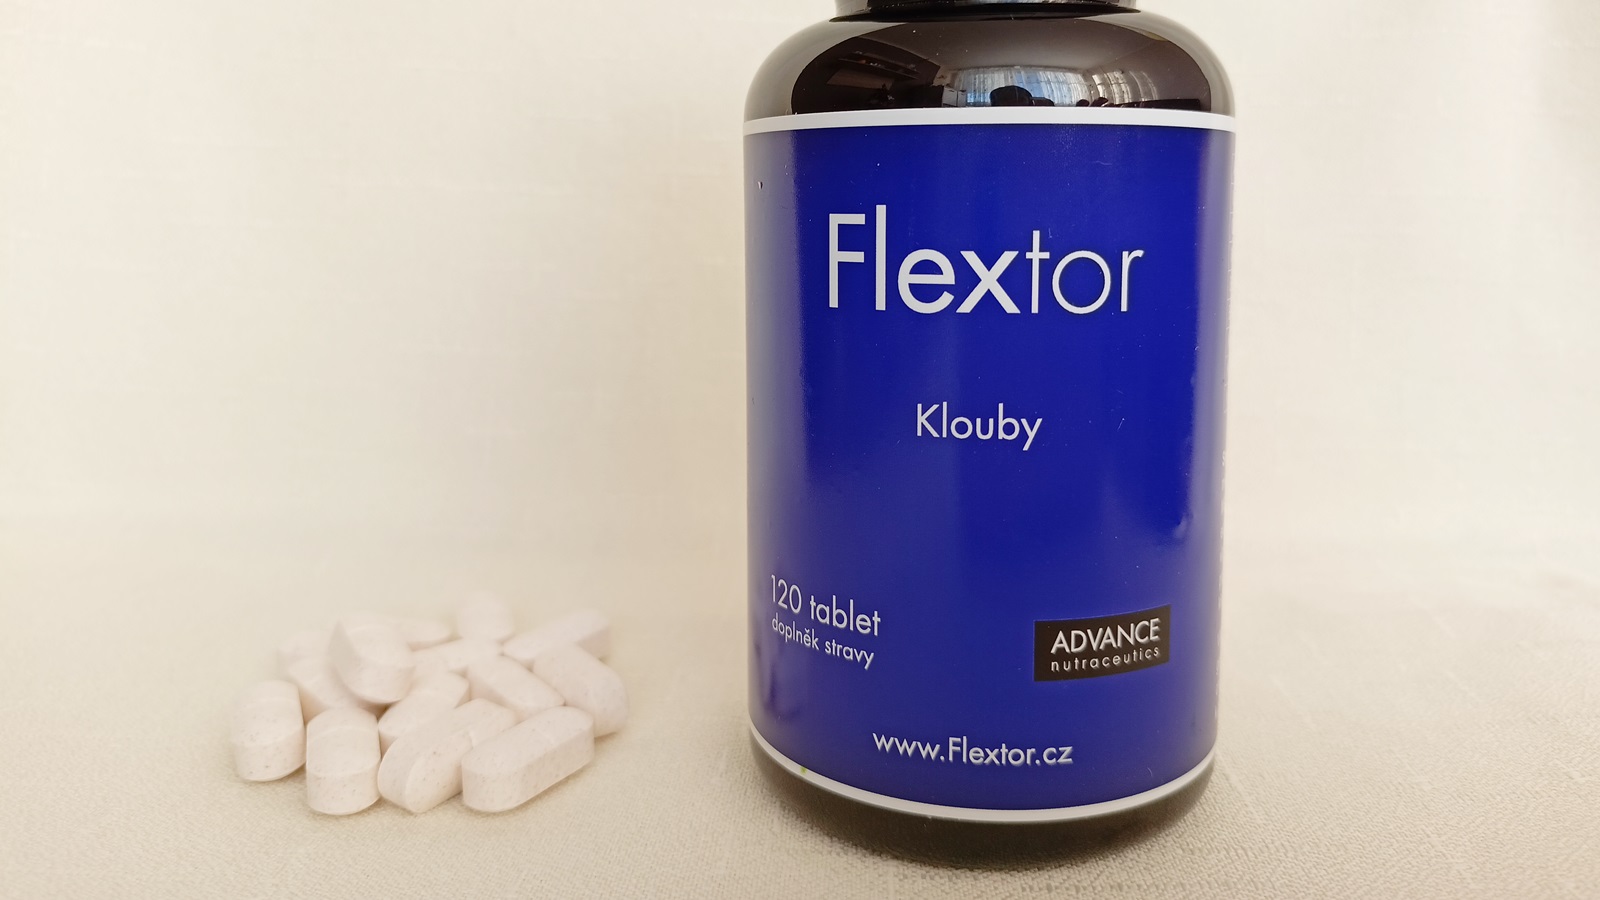 Recenze: Přípravek na klouby Flextor od ADVANCE nutraceutics